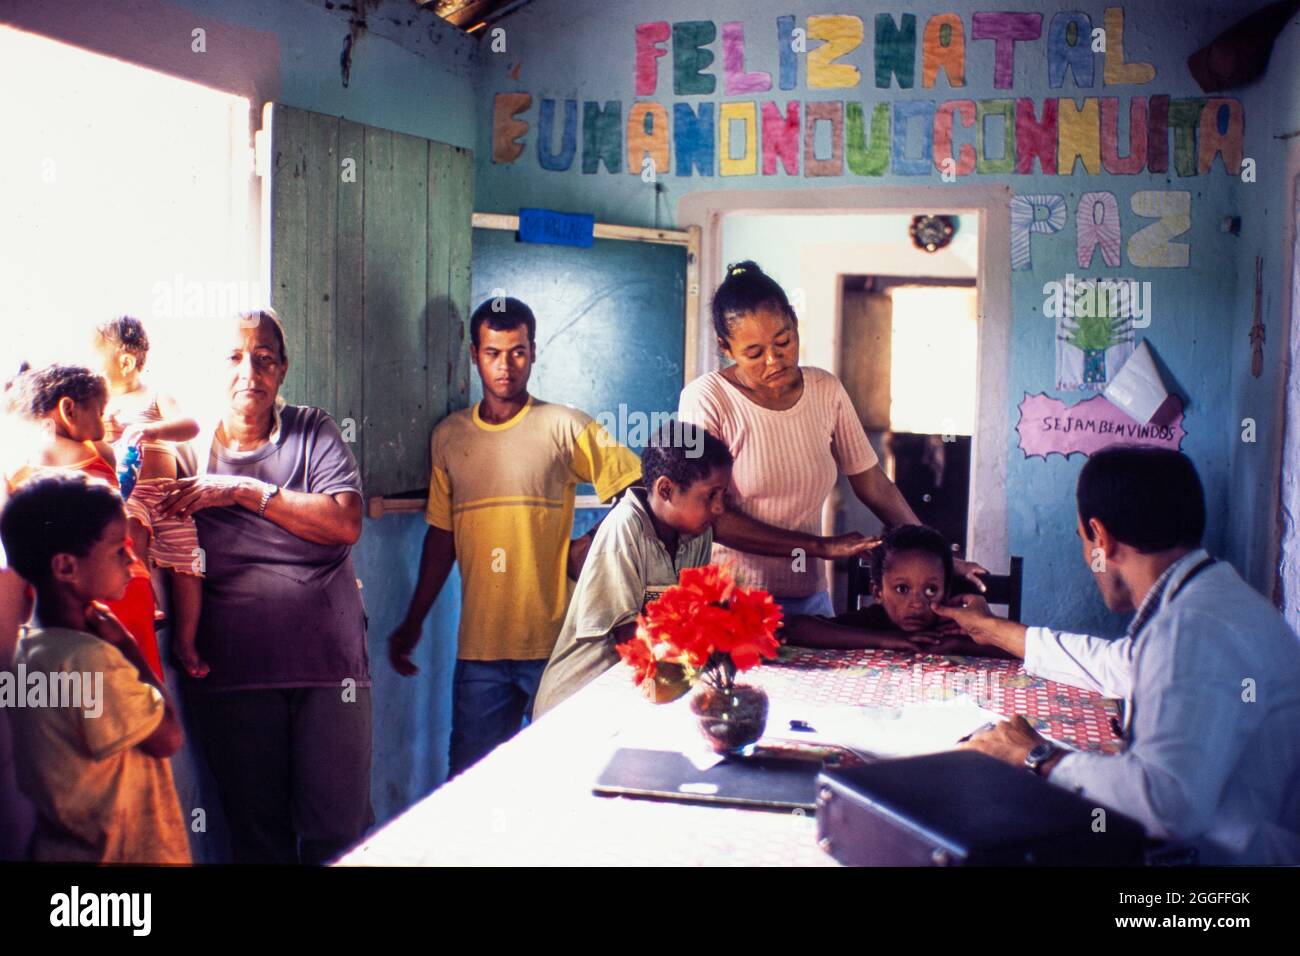 Programma medico di famiglia ( Programa medico de Familia ) sostenuto dal Governo brasiliano - le famiglie povere provenienti dalla campagna brasiliana ricevono assistenza sanitaria e medicina di famiglia presso la scuola rurale locale, sulla base della conoscenza del paziente nel contesto della famiglia e della comunità, sottolineando la prevenzione delle malattie e la promozione della salute. Foto Stock